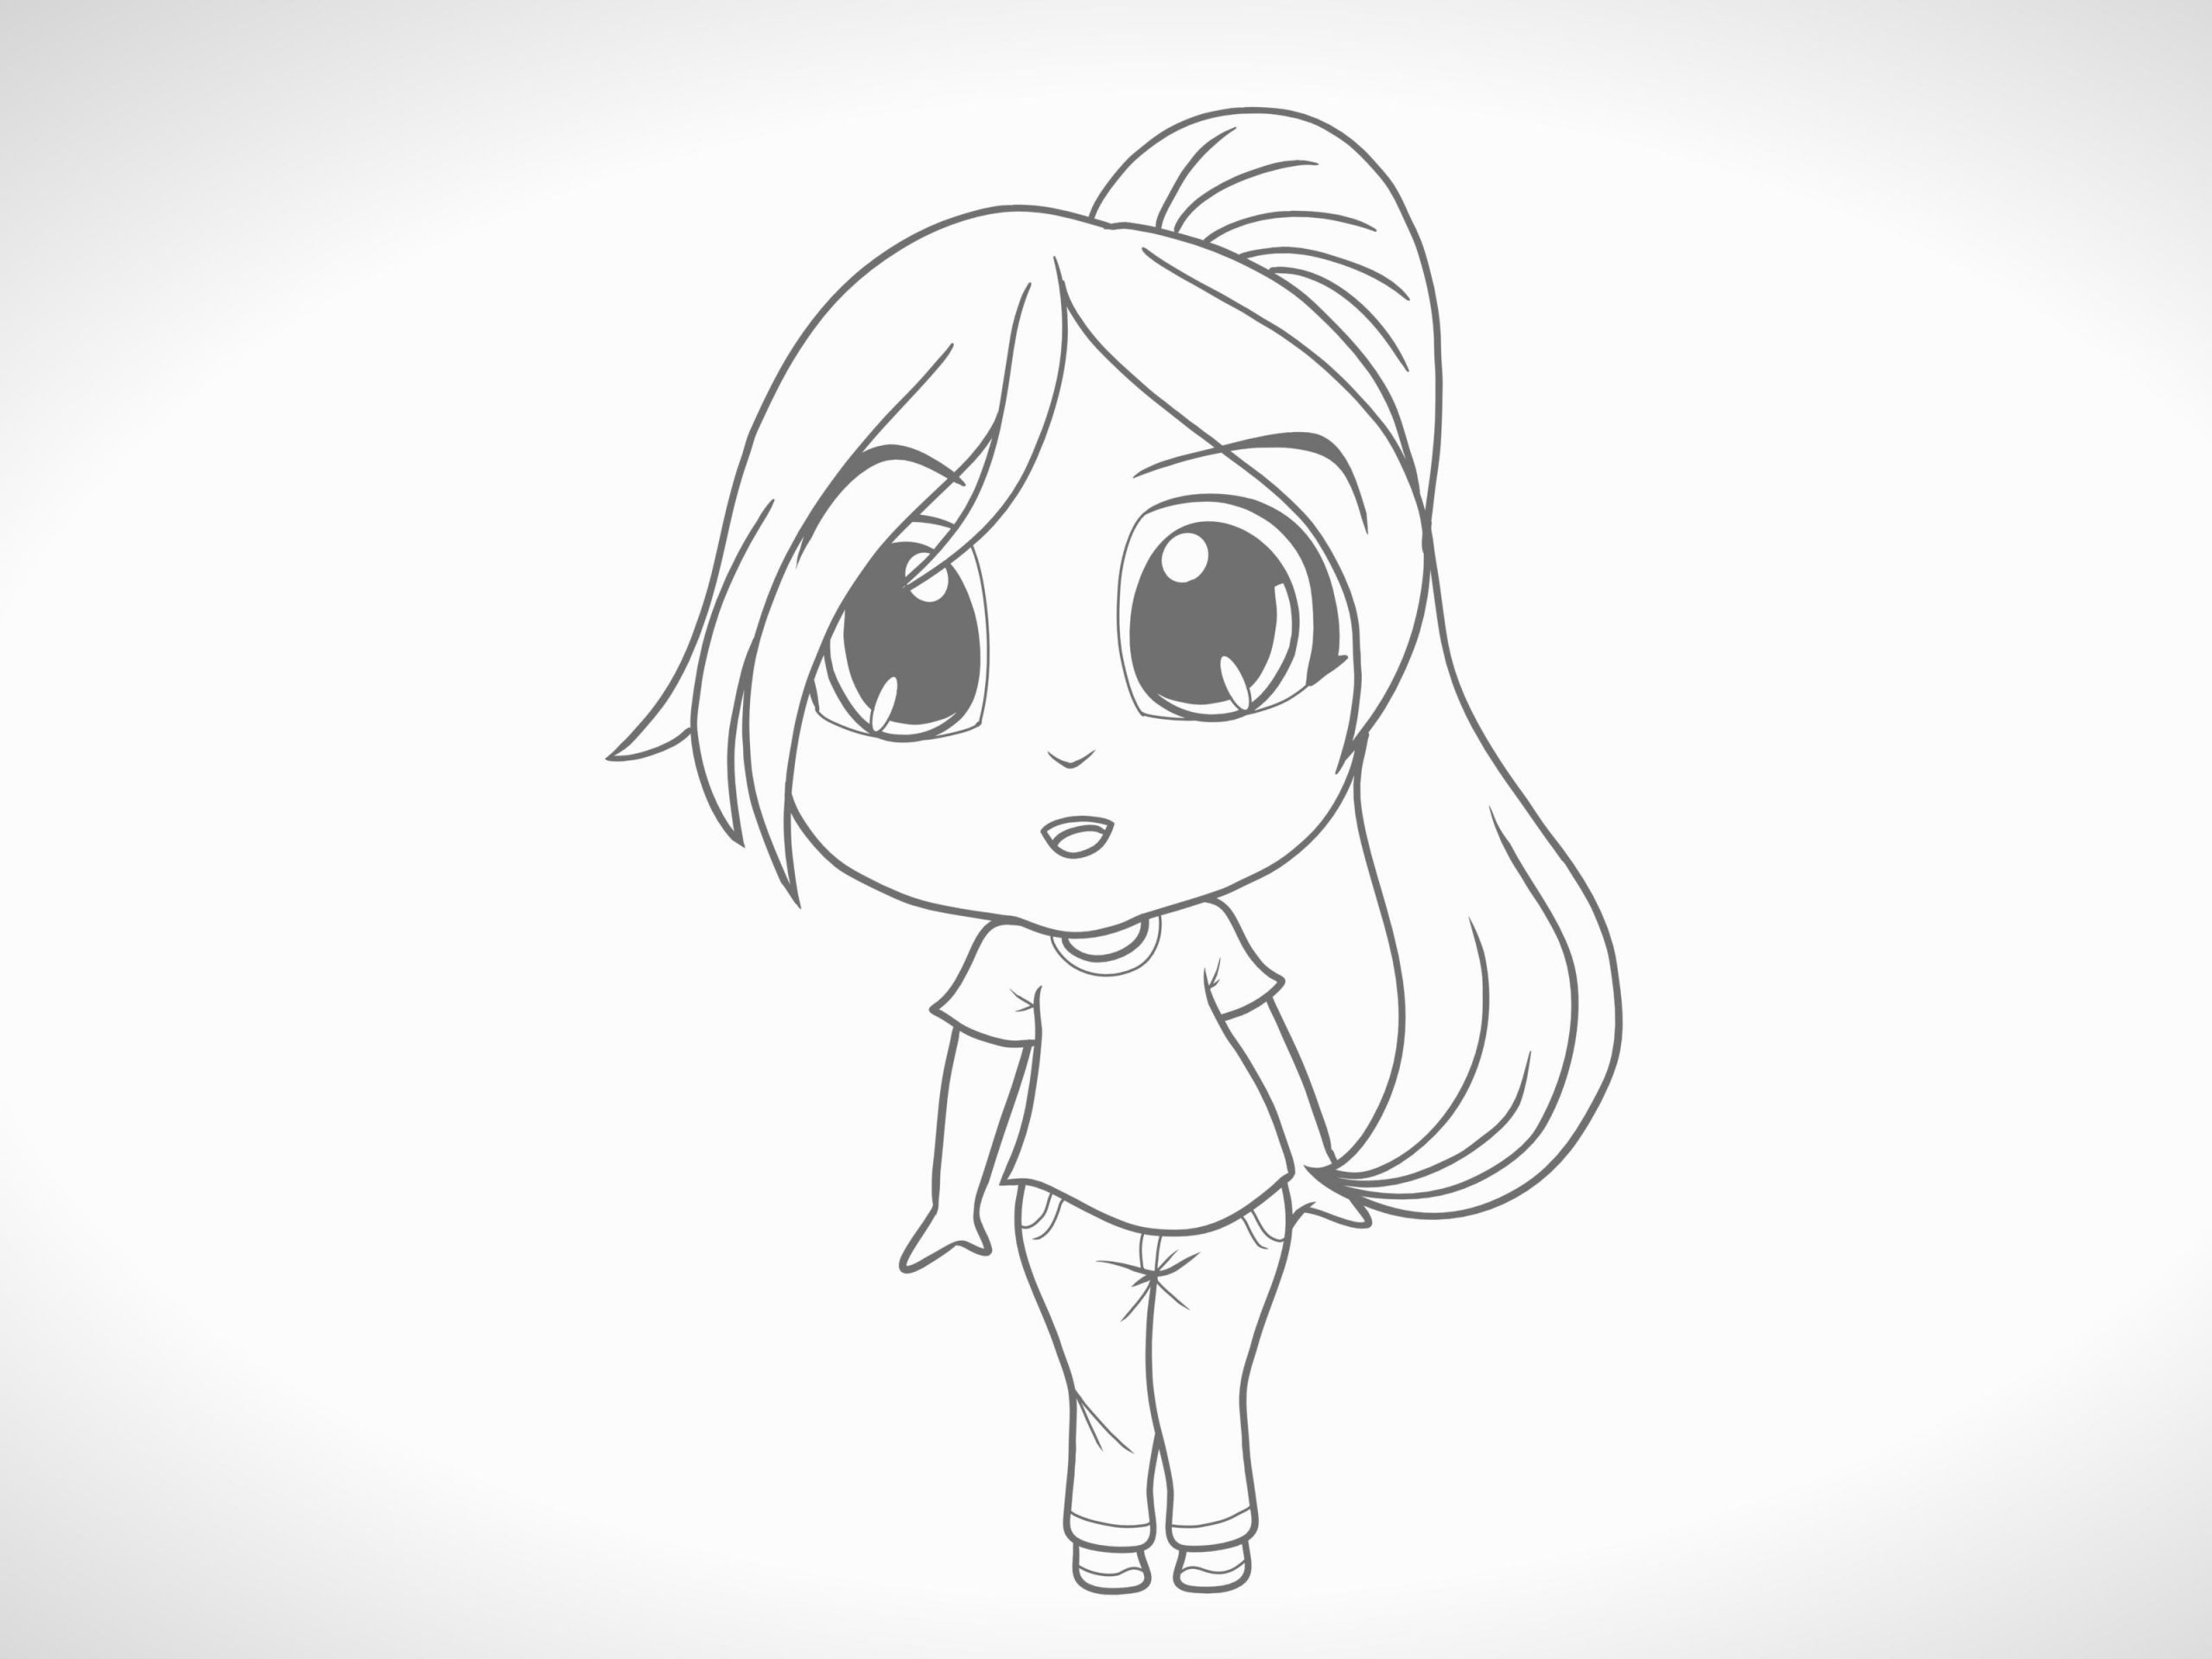 How to Draw Sketch Of A Girl Eine Chibi Figur Zeichnen 12 Schritte Mit Bildern Wikihow